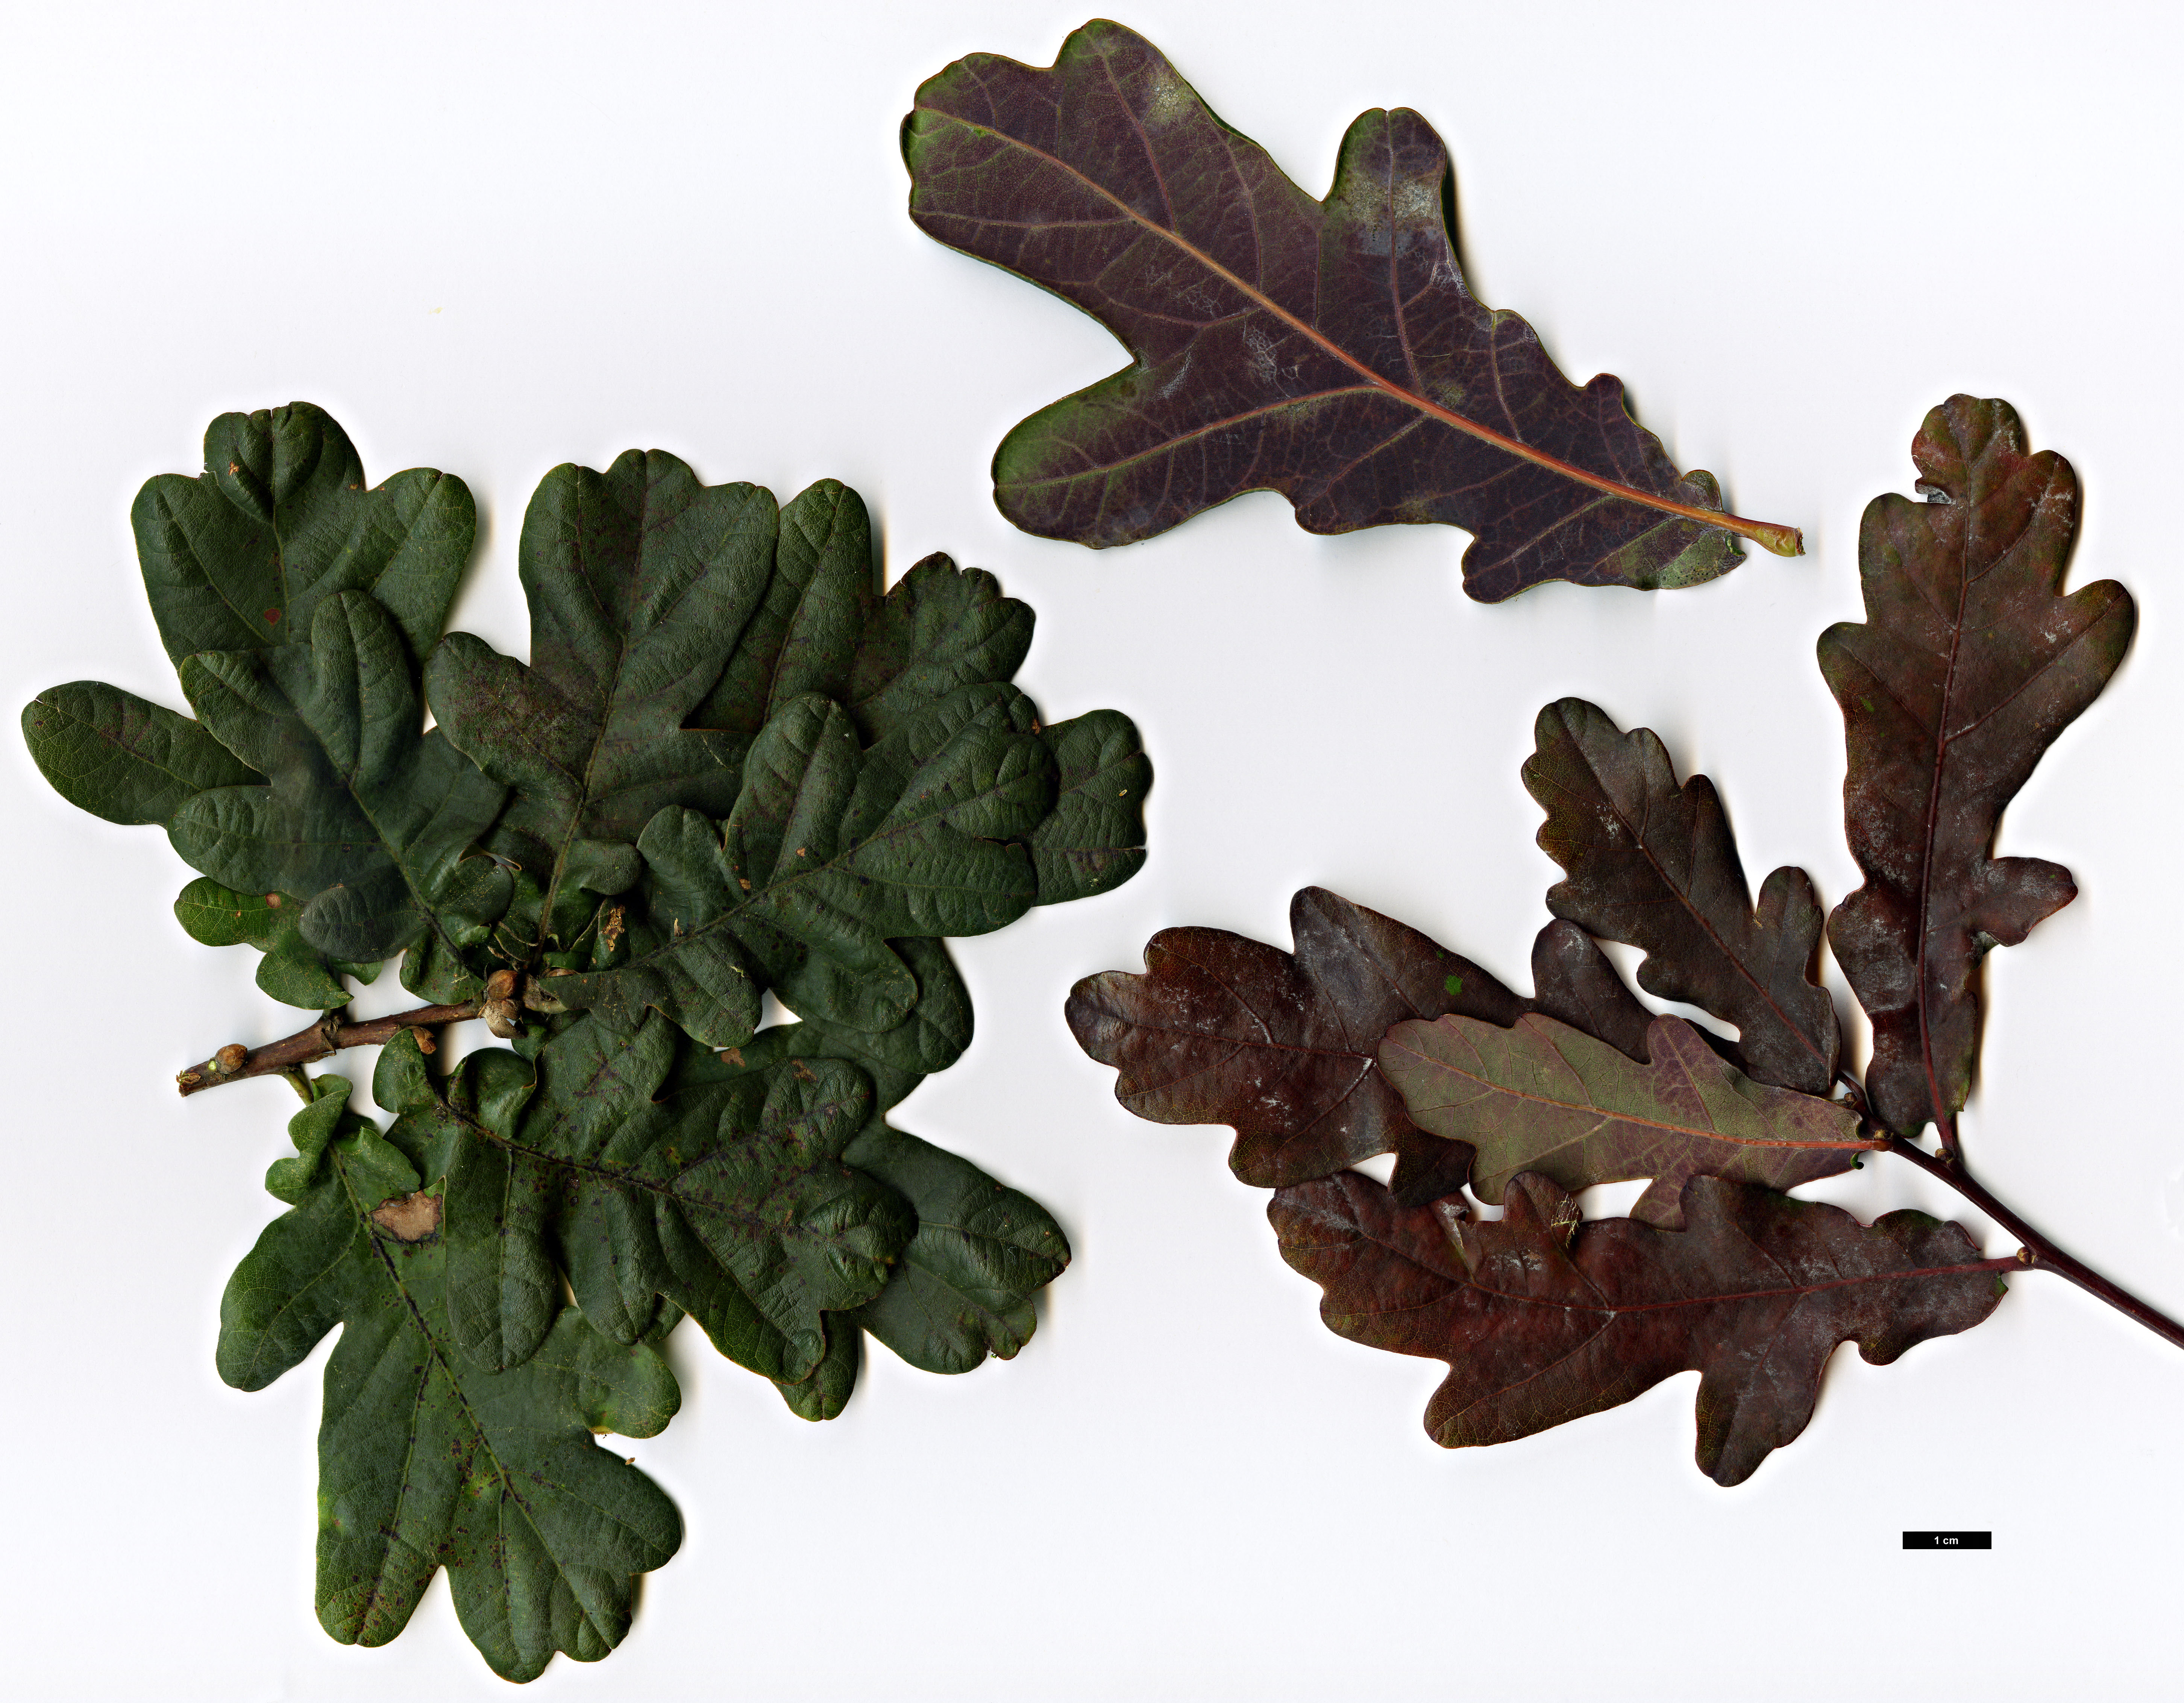 High resolution image: Family: Fagaceae - Genus: Quercus - Taxon: robur - SpeciesSub: 'Atropurpurea'